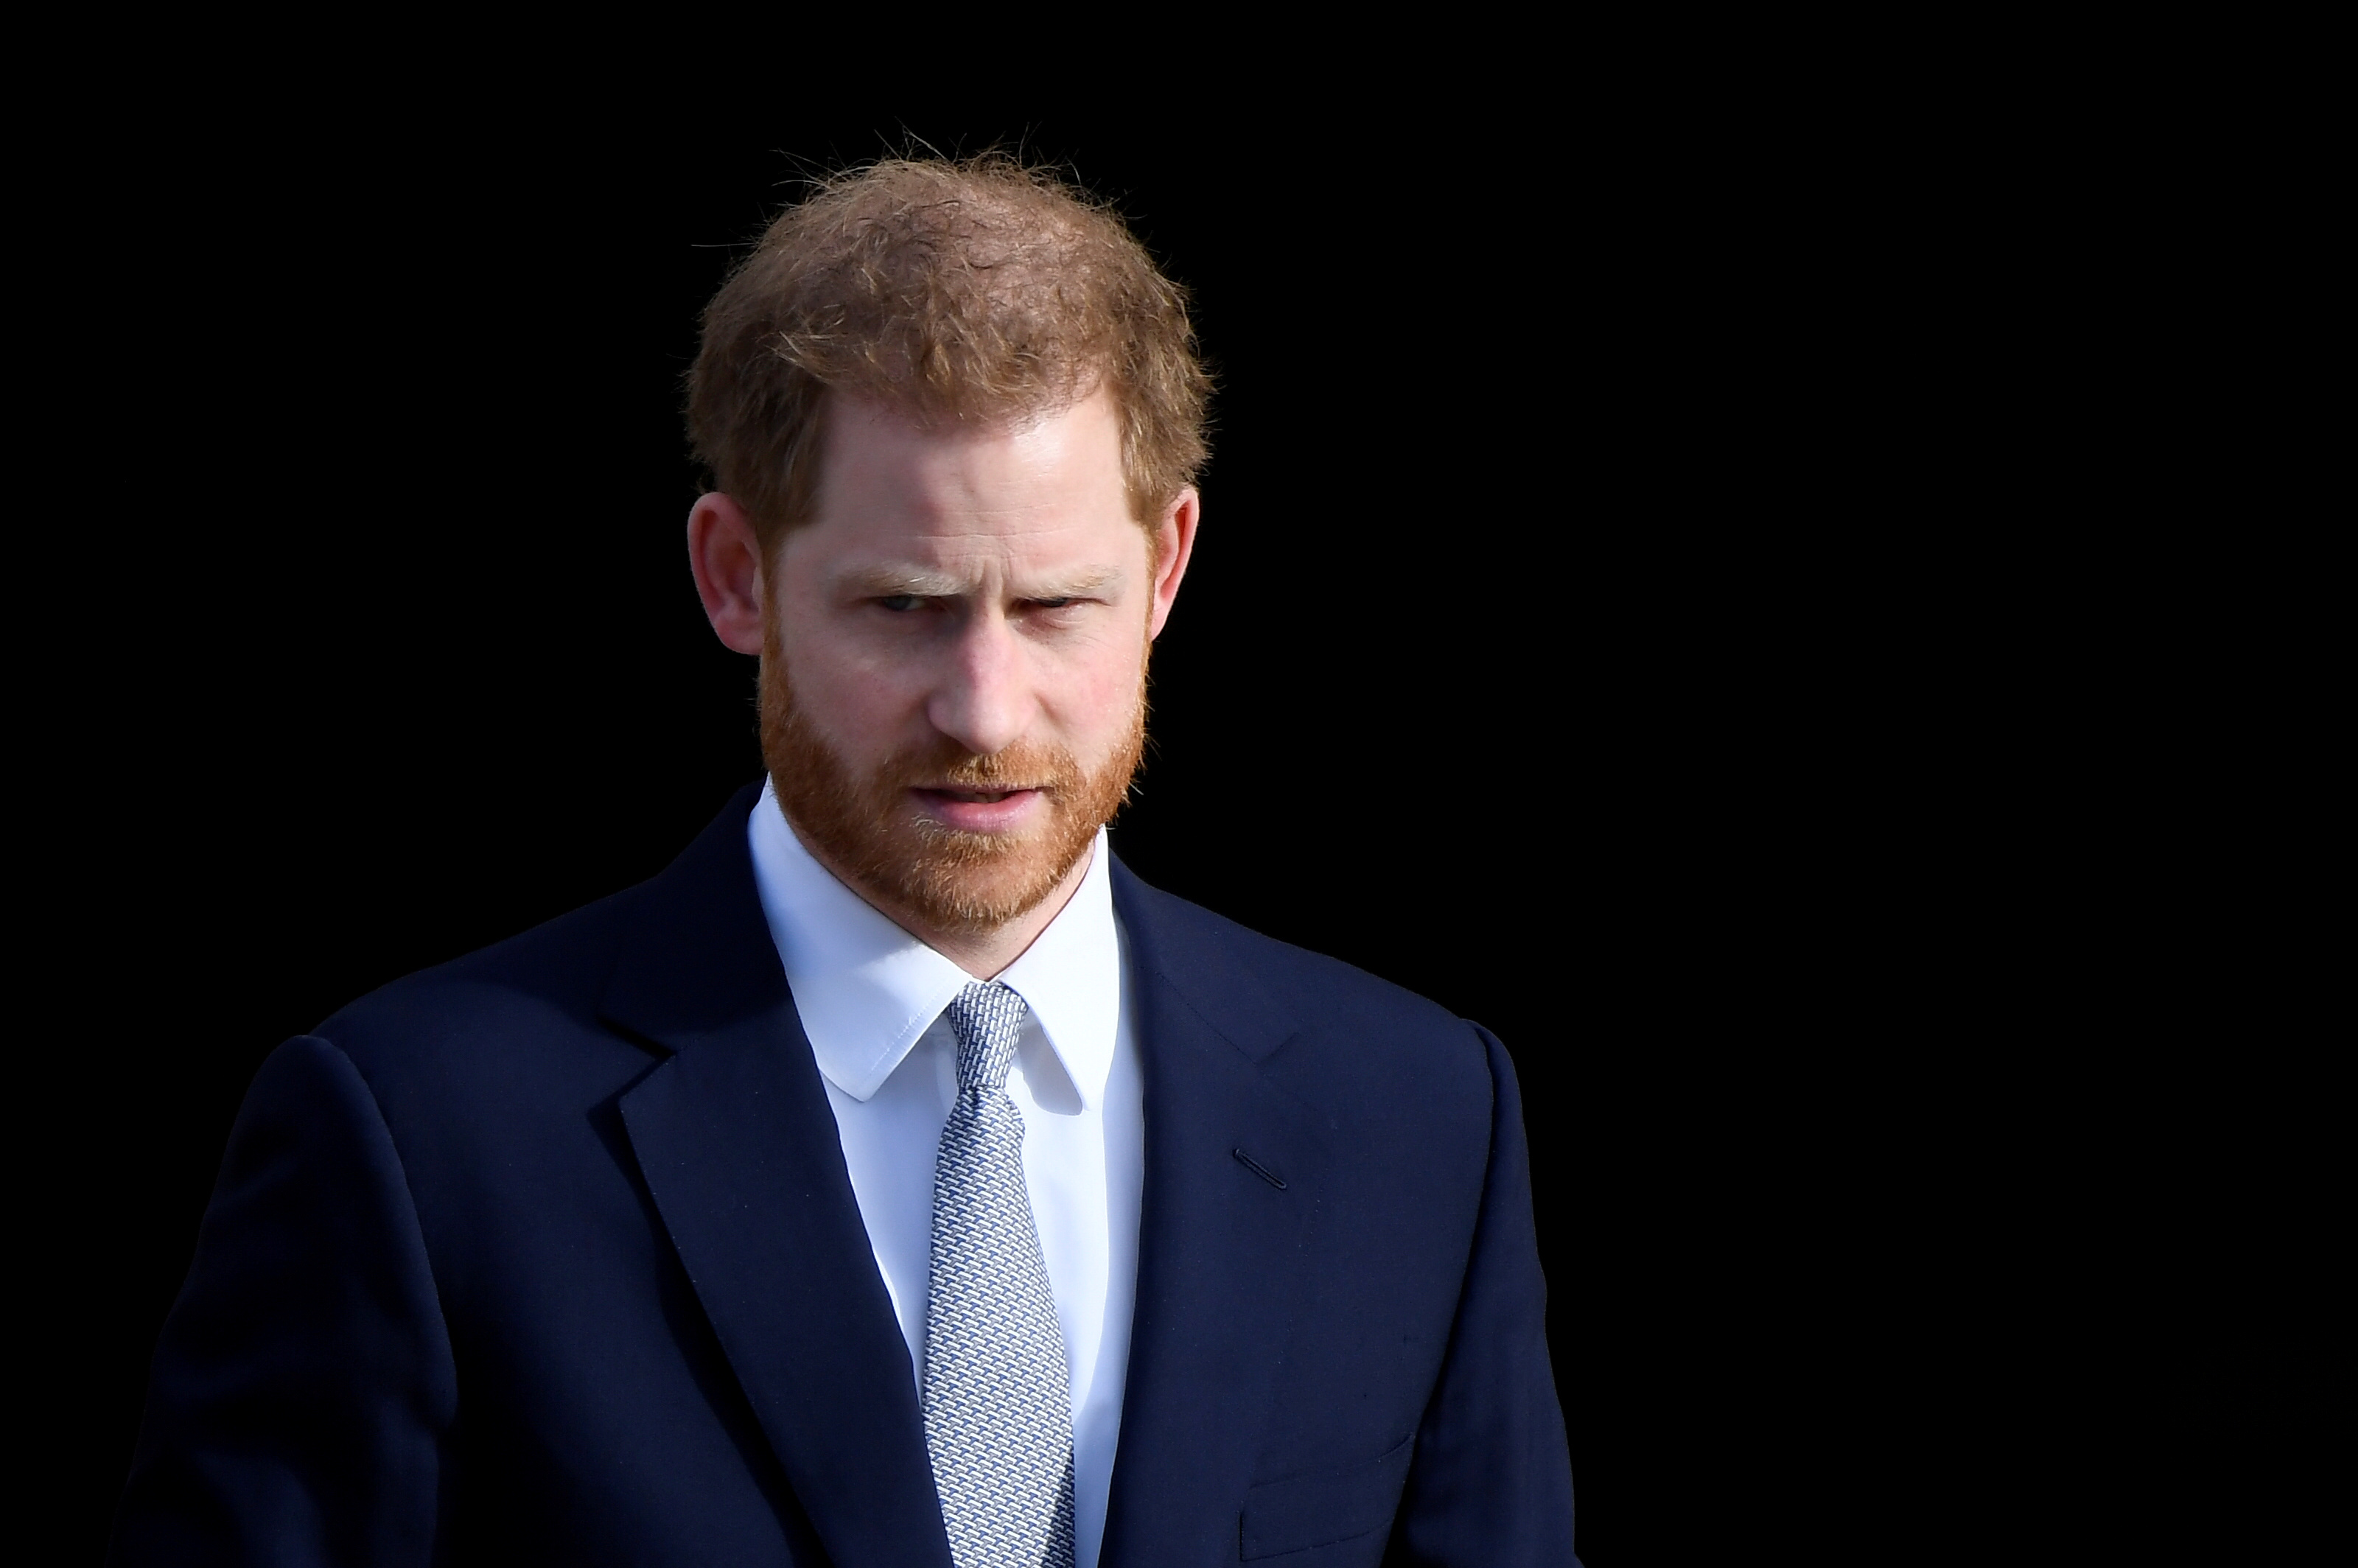 El príncipe Harry lleva ante el juez al “Daily Mail” por difamación